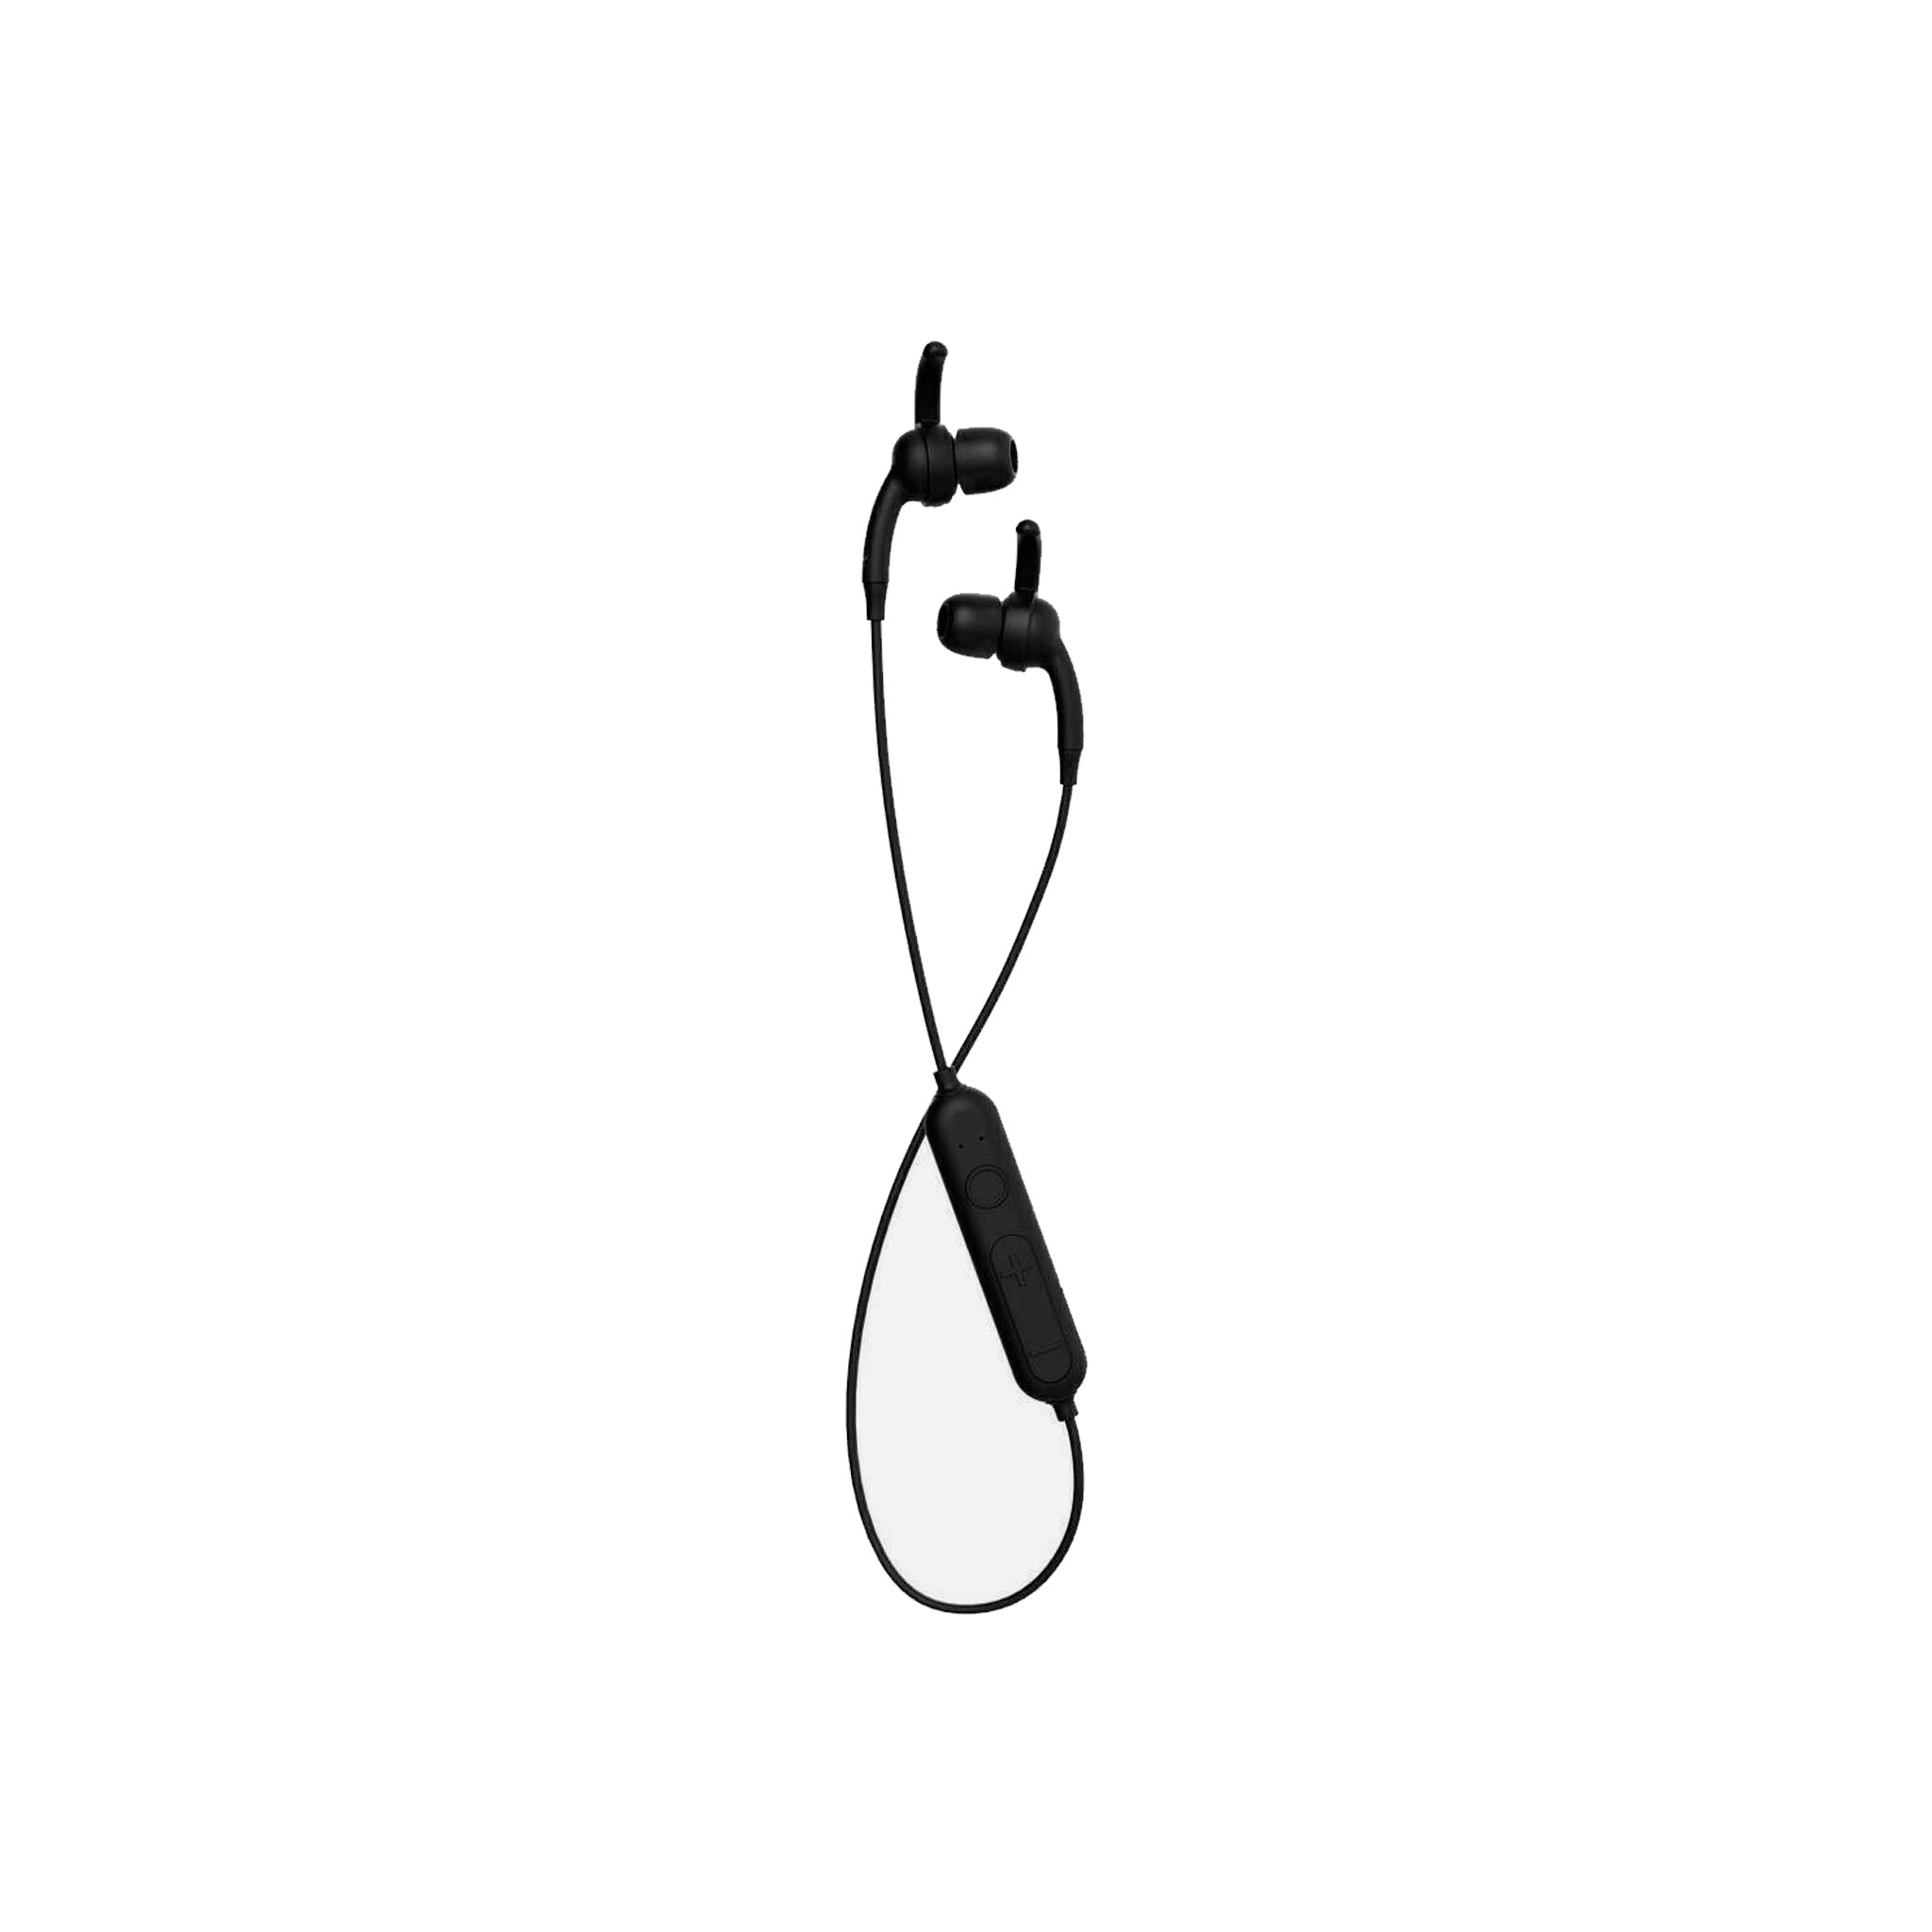 Ifrogz - Free Rein 2 Sport In Ear Bluetooth Headphones - Black